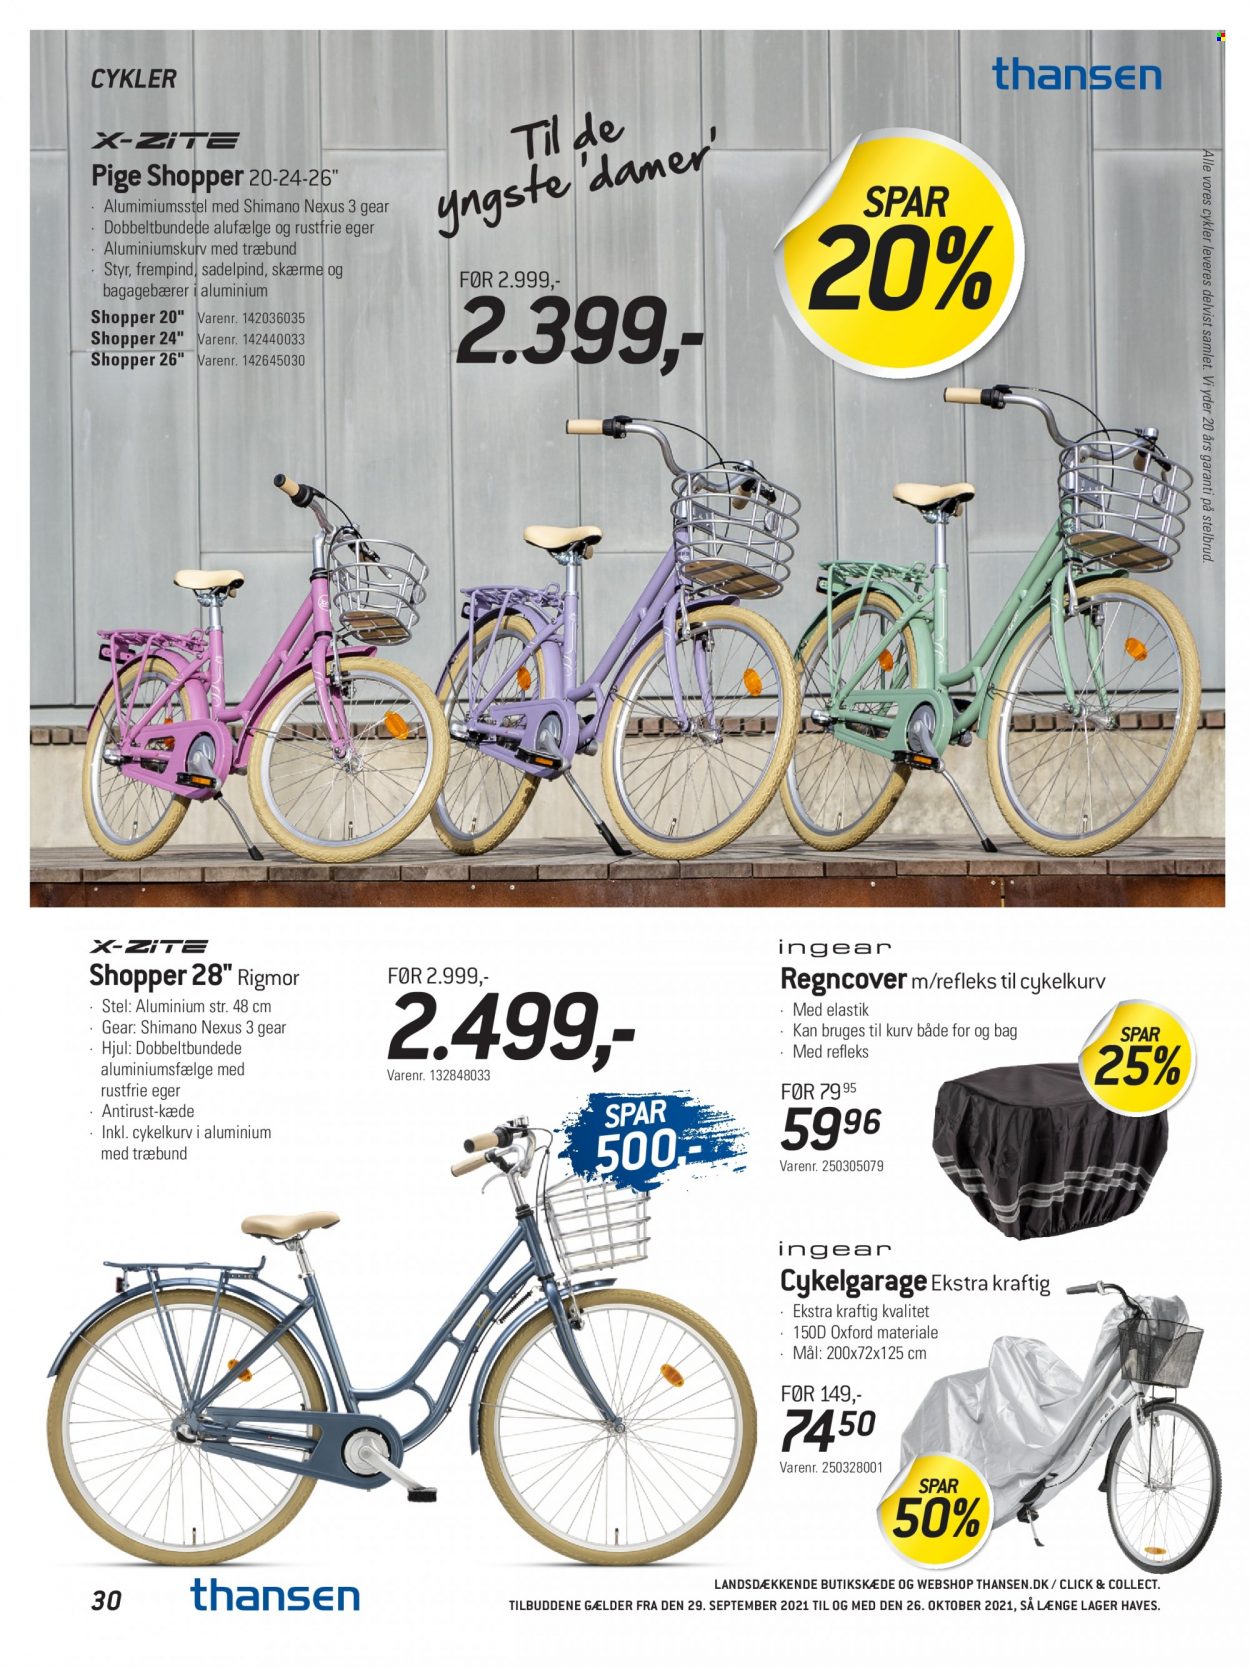 thumbnail - Thansen tilbud  - 29.9.2021 - 26.10.2021 - tilbudsprodukter - Shimano, cykelkurv. Side 30.